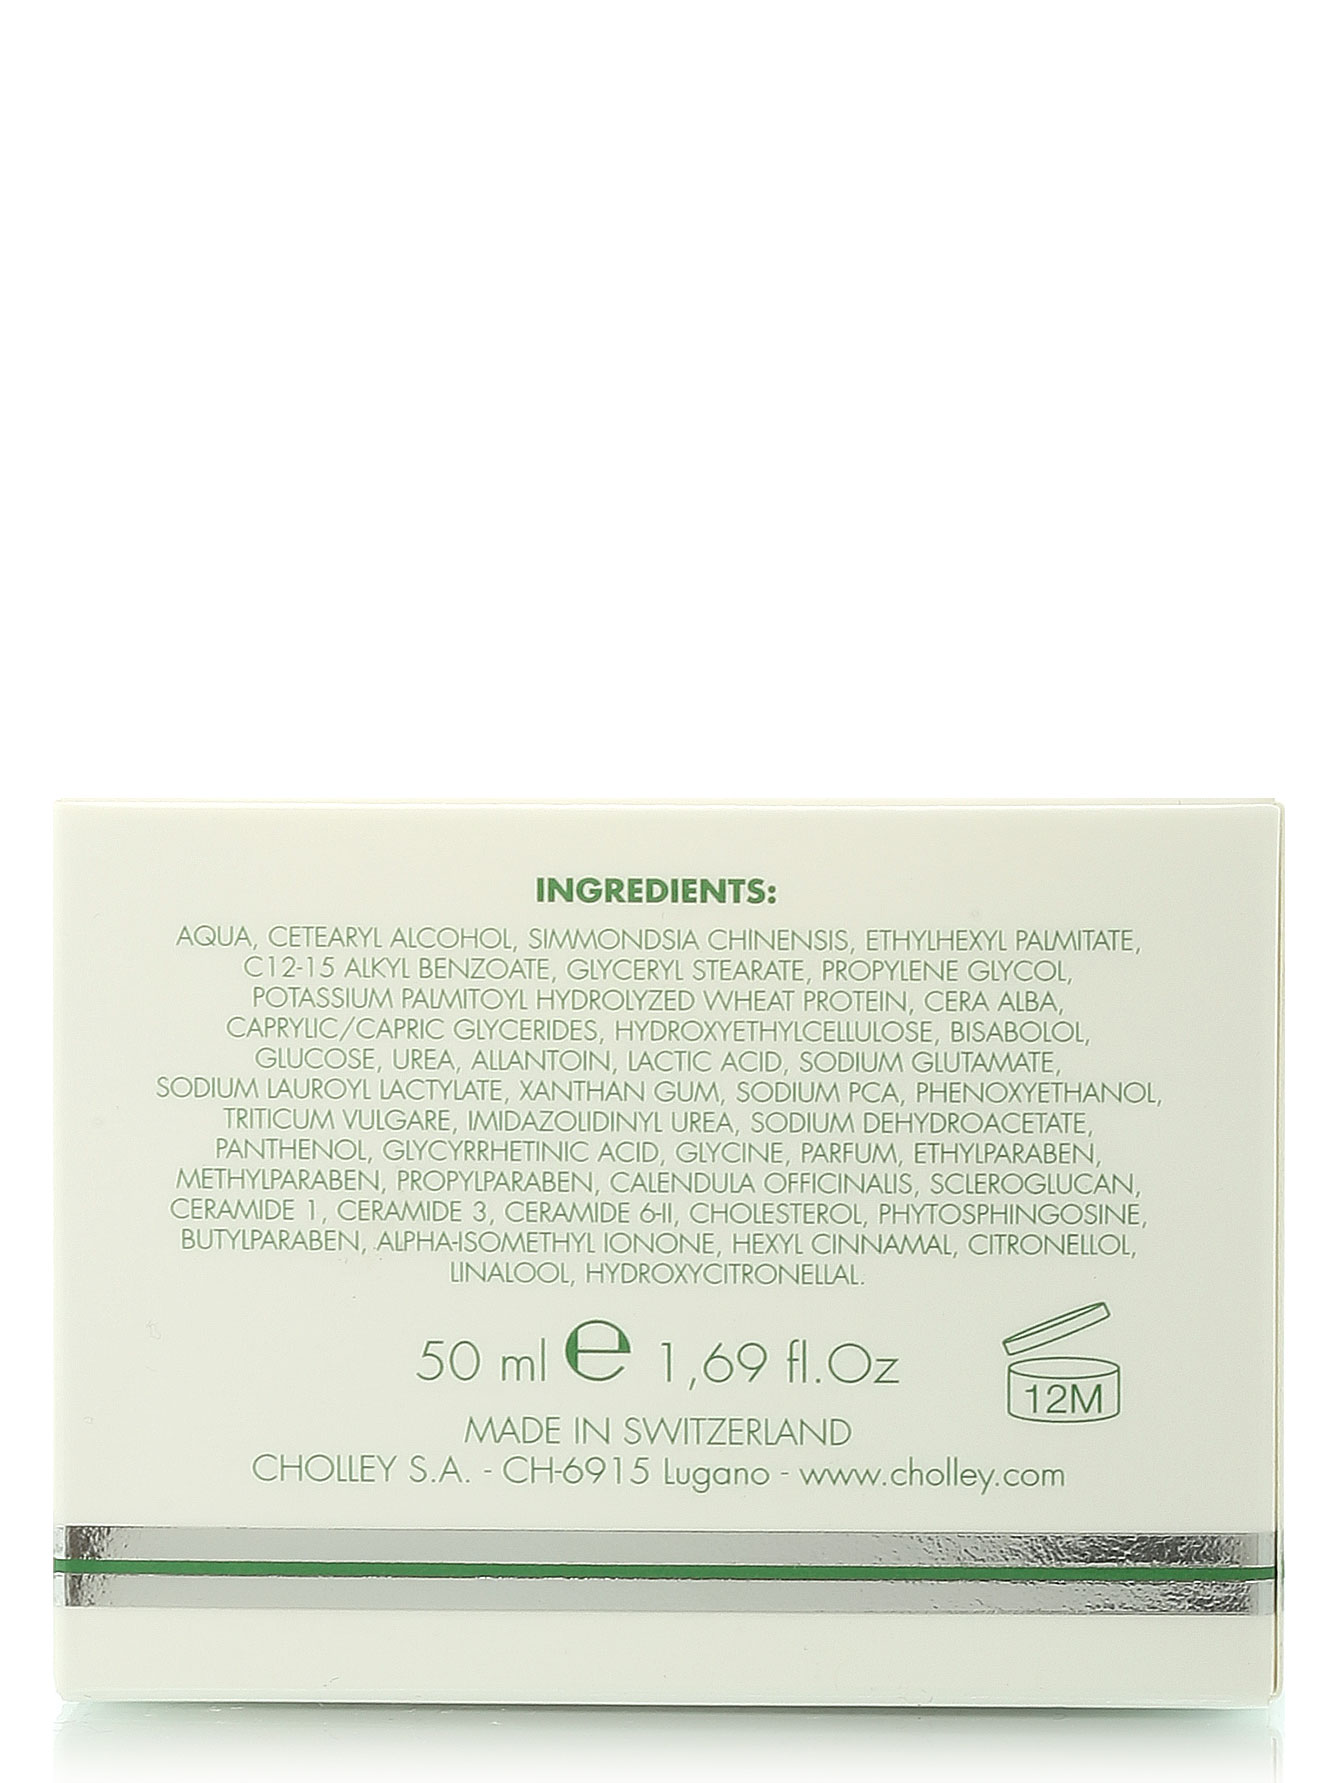  Крем для чувствительной кожи Bioregene - Skin Care, 50ml - Модель Верх-Низ